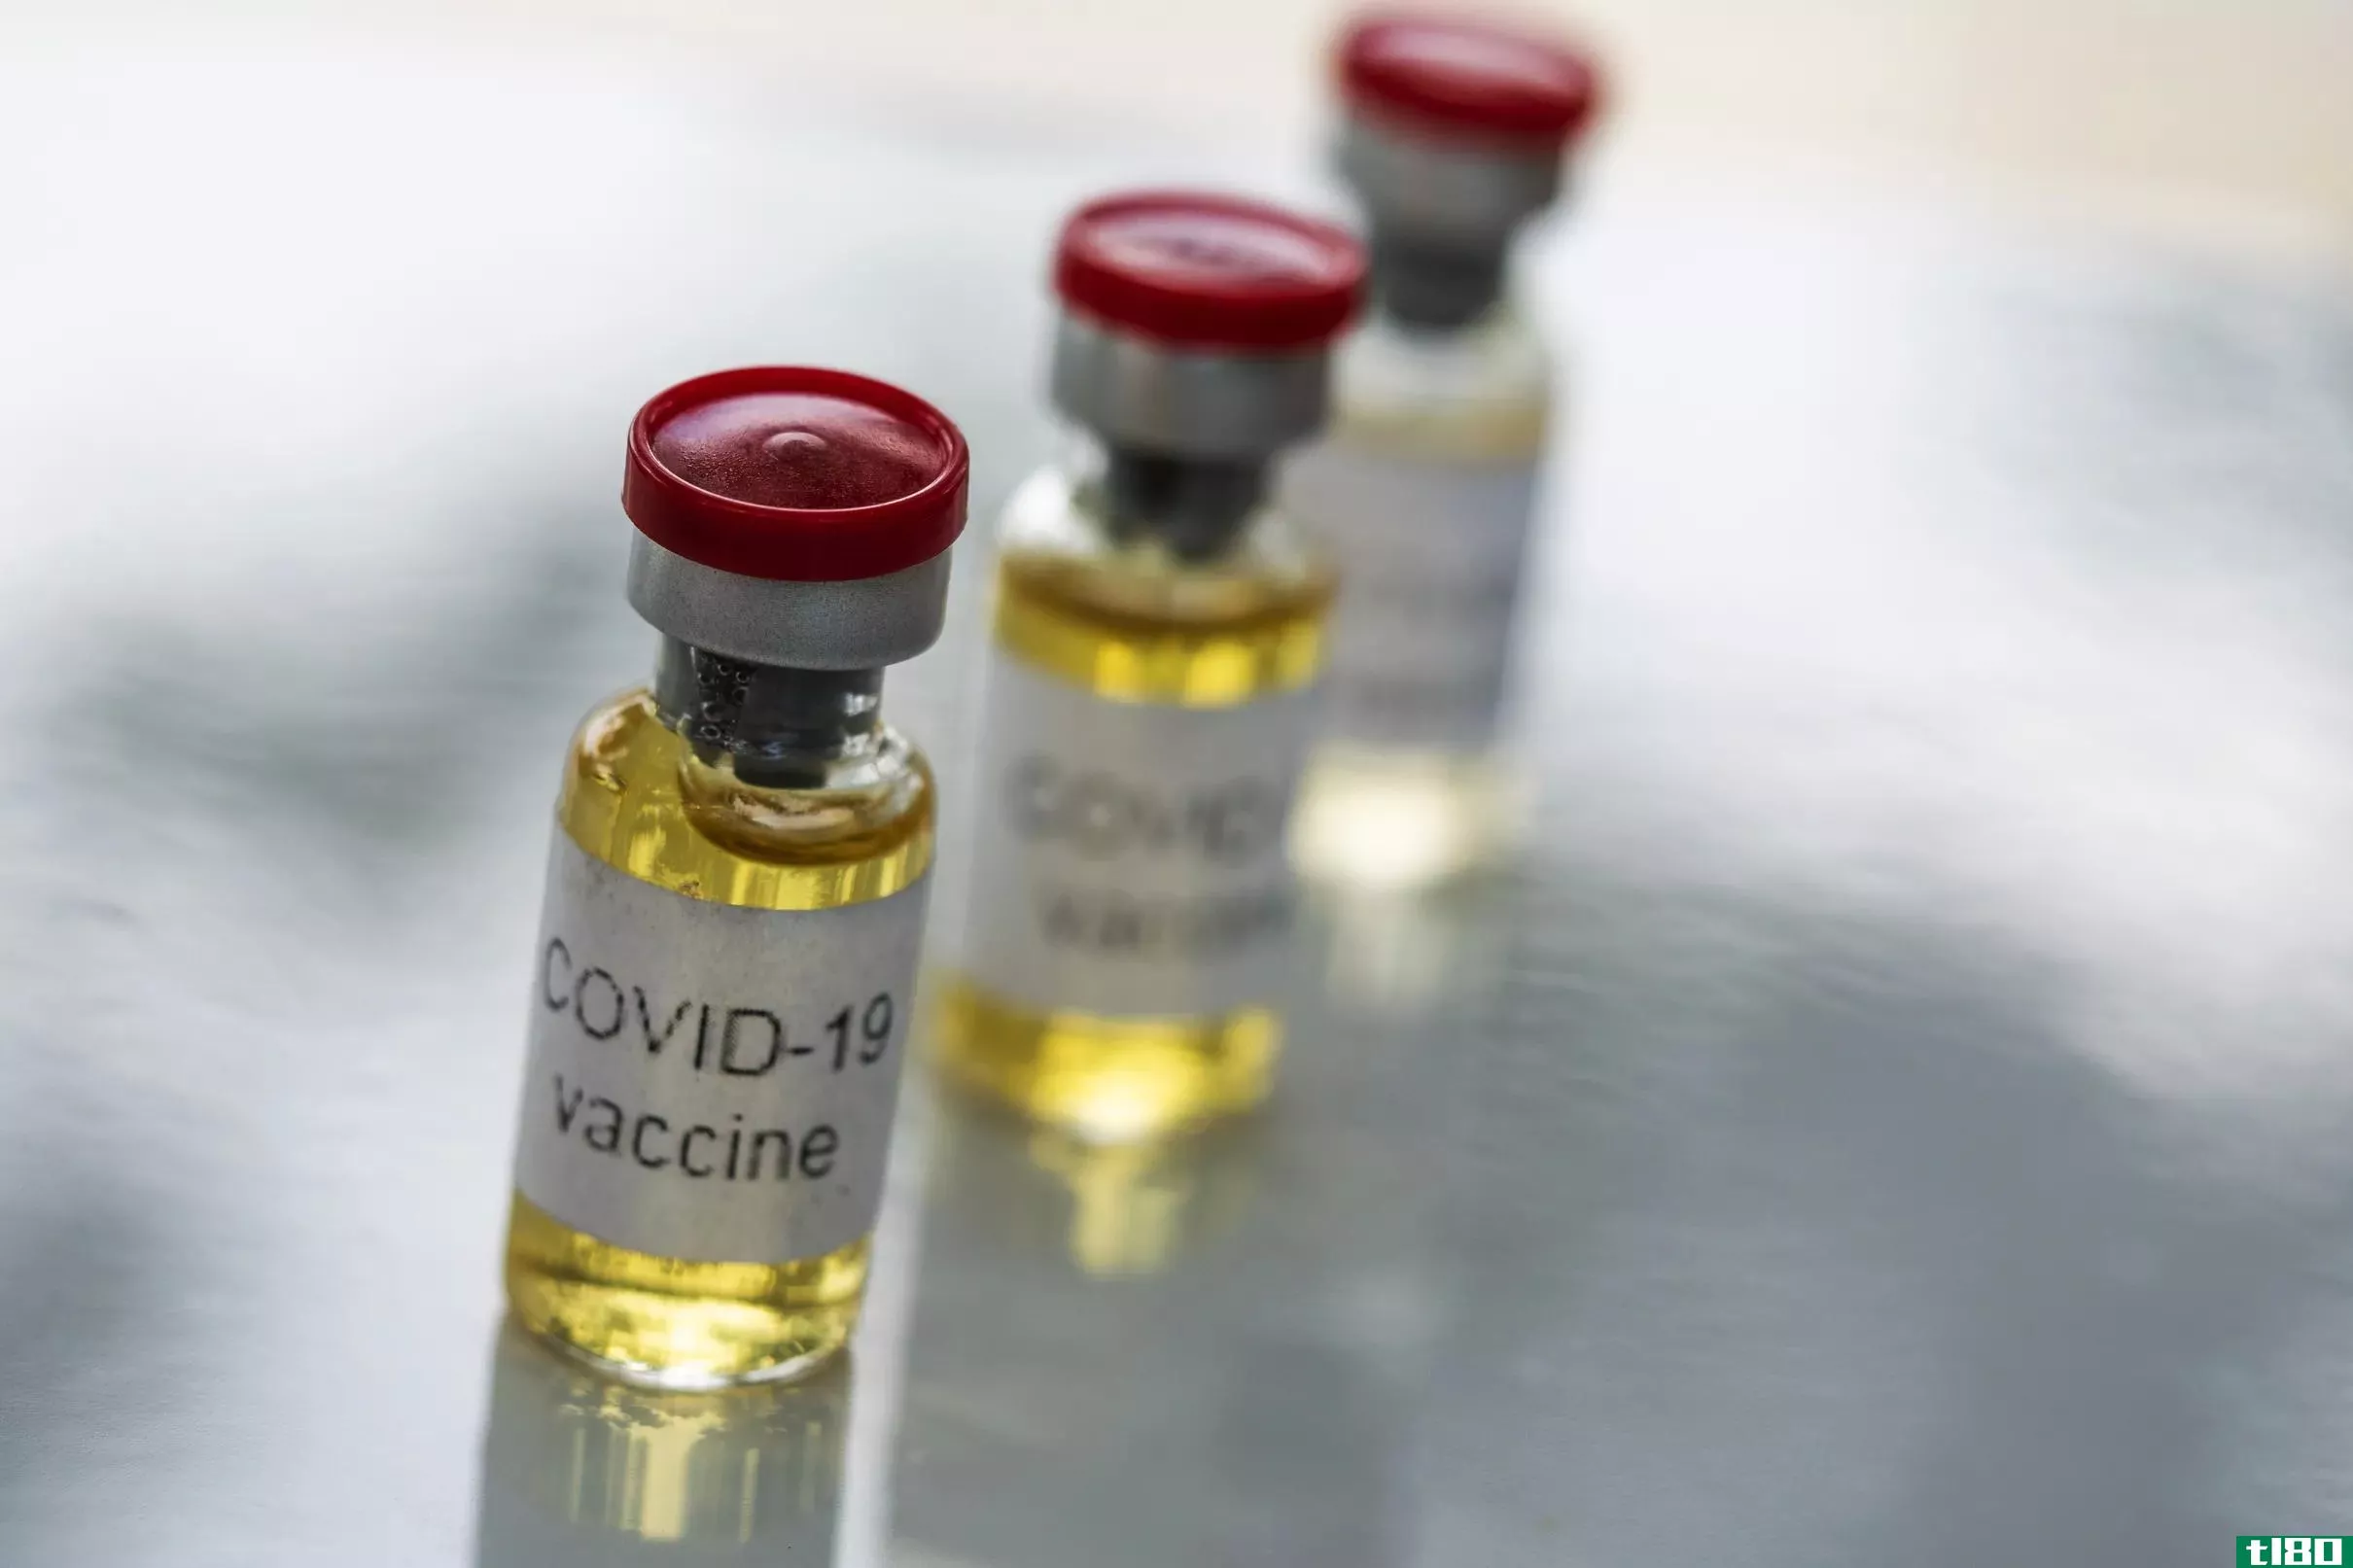 研究人员用diy冠状病毒疫苗成为自己的实验鼠